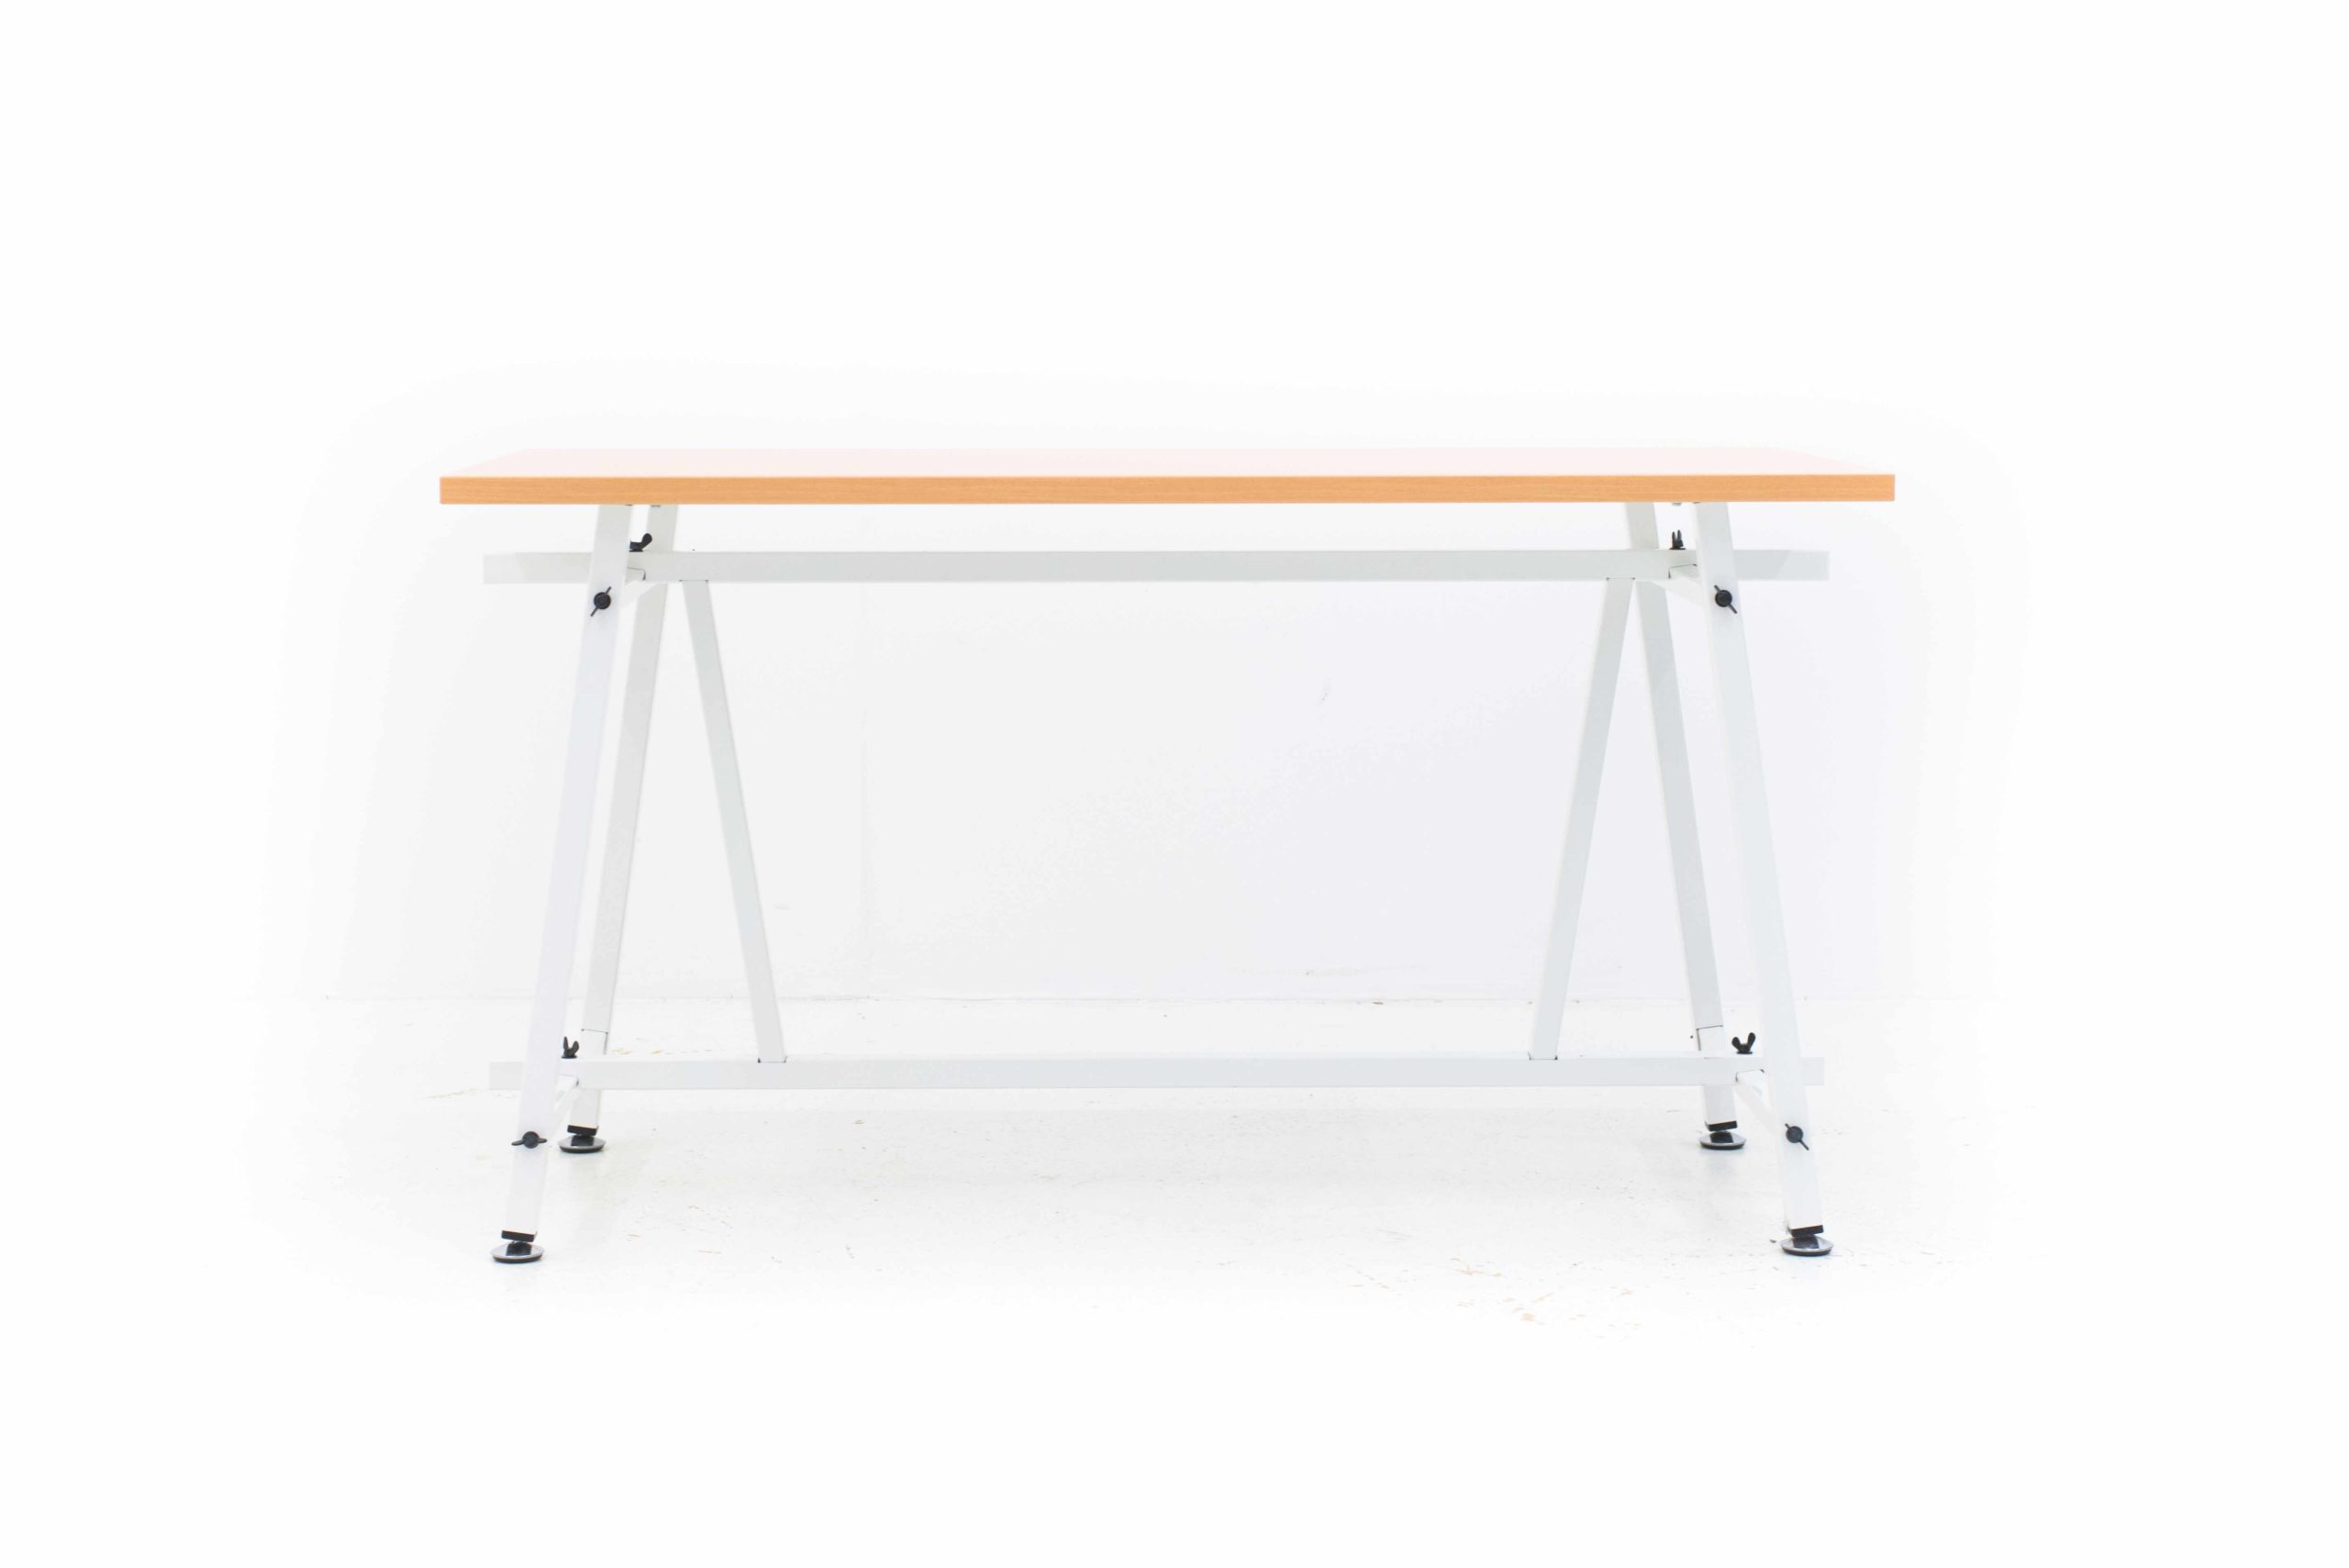 Christophe Marchand Atelier Tisch 4030 von Embru-2